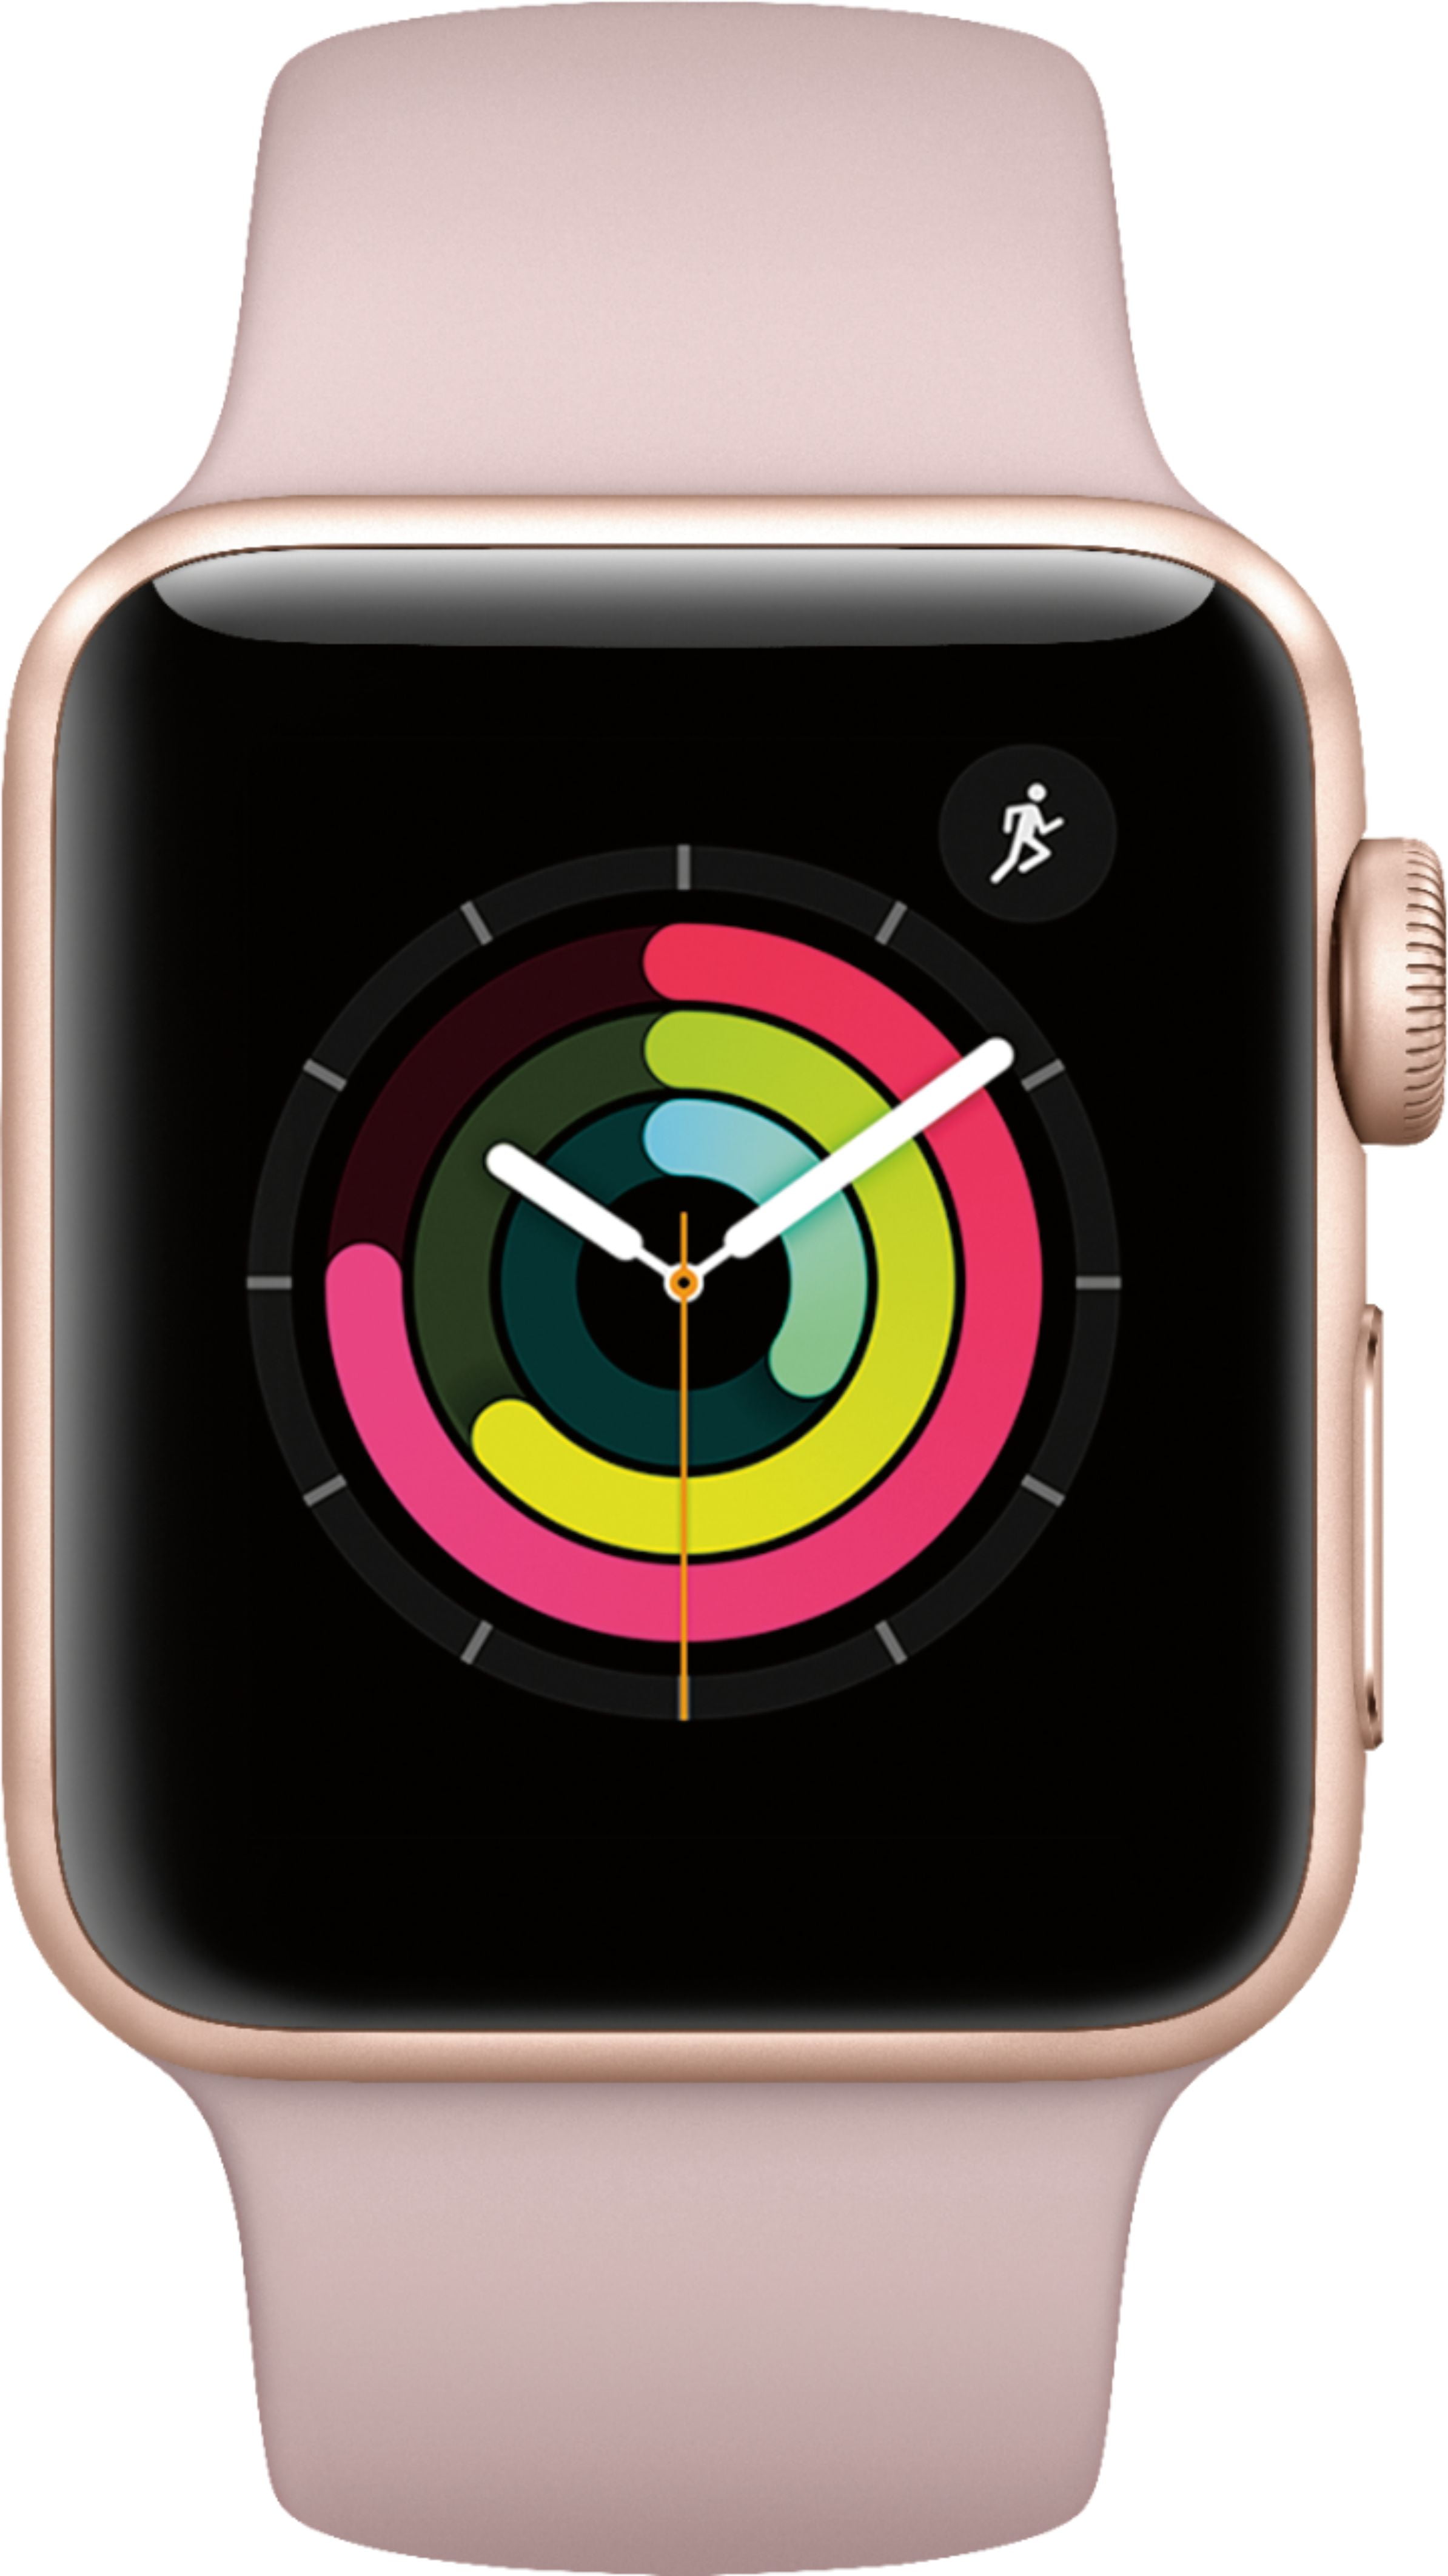 Restored Apple Watch Gen 3 Series 3 38mm Gold Aluminum - Pink Sand